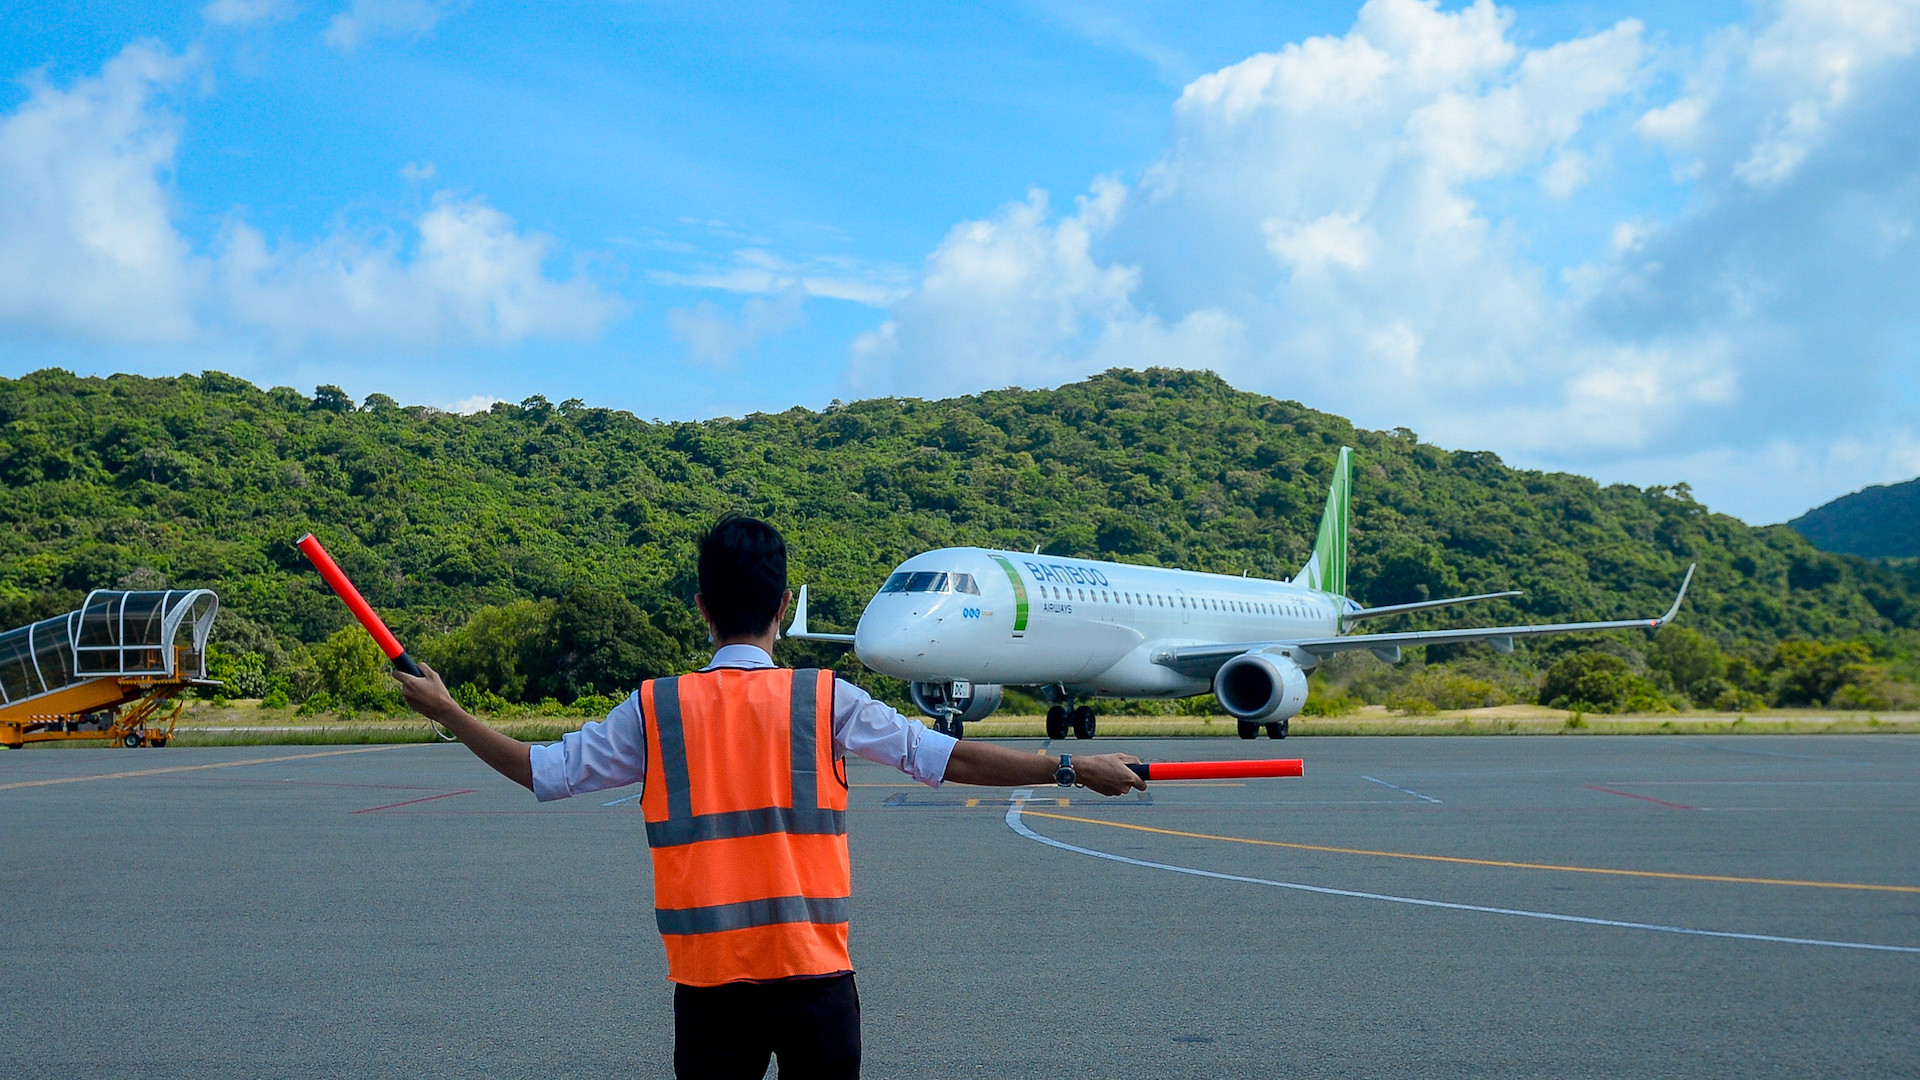 Khai trương 3 đường bay thẳng, Bamboo Airways tặng 1 tỷ đồng tiền mặt hỗ trợ hộ nghèo Côn Đảo - ảnh 2